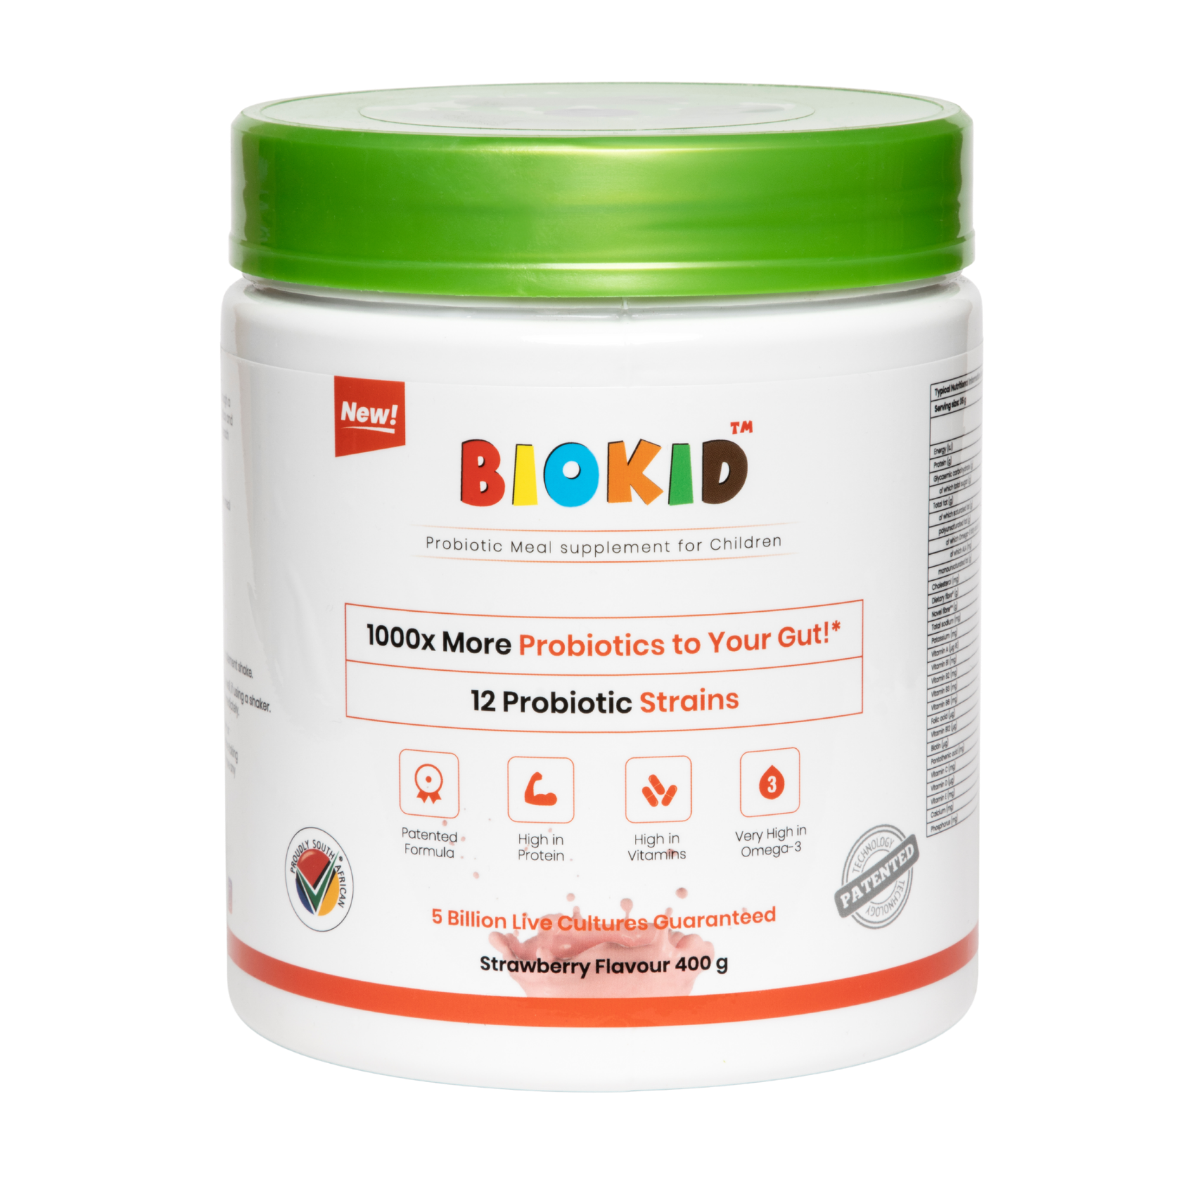 BioKid™ Probiotic Meal Supplement for Children